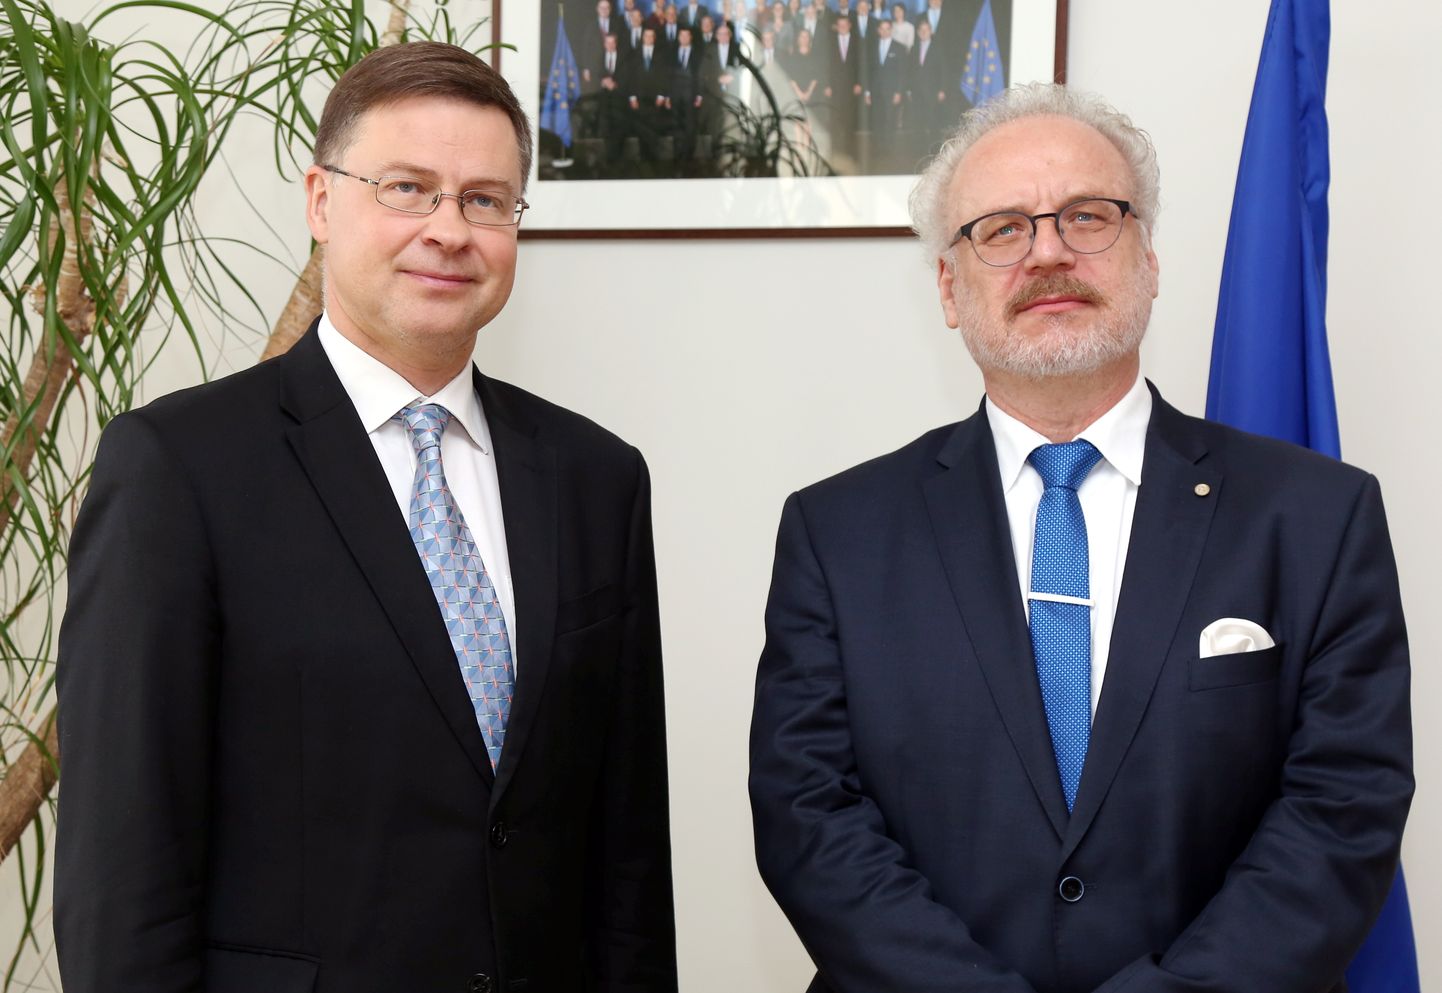 Eiropas Komisijas viceprezidents Valdis Dombrovskis (no kreisās) un jaunievēlētais Latvijas Valsts prezidents Egils Levits tikšanās laikā Eiropas Savienības mājā